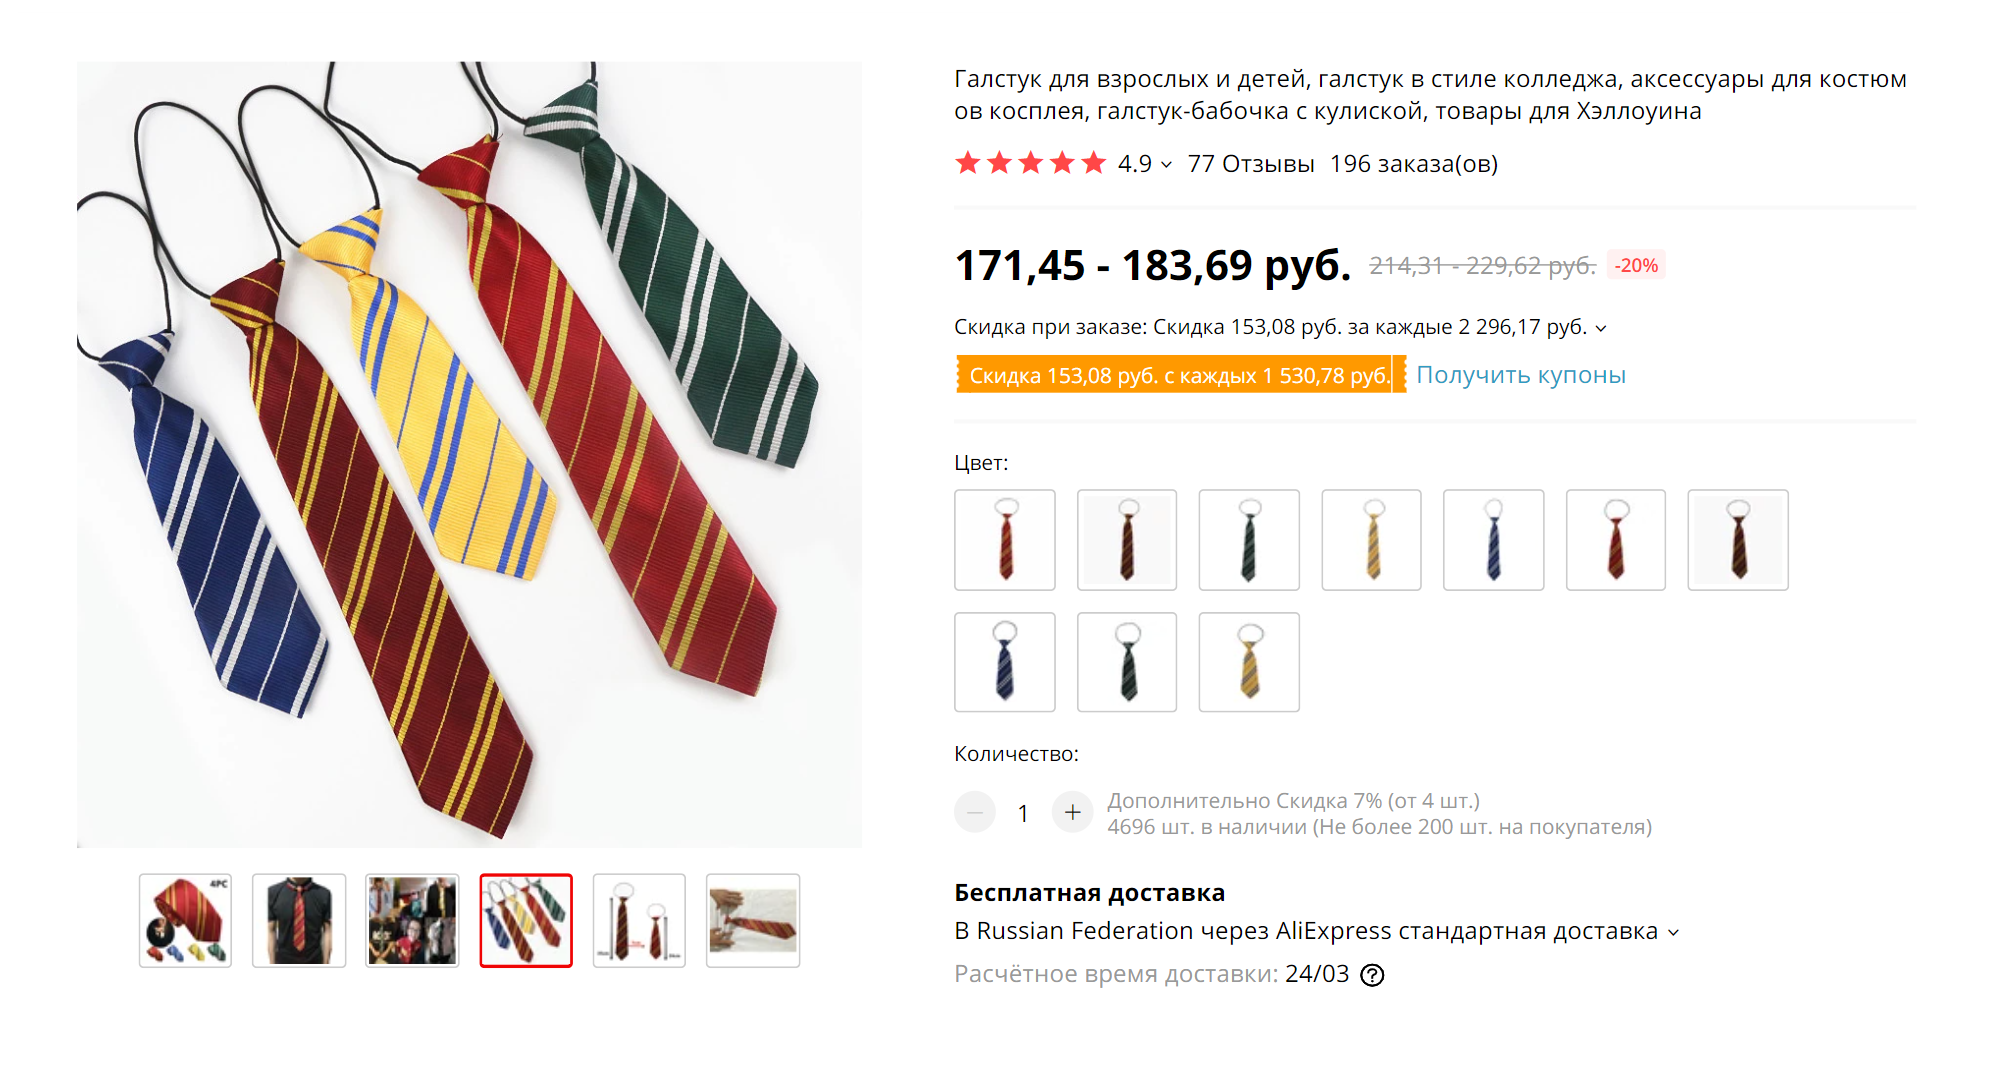 На «Алиэкспрессе» продавались галстуки всех факультетов Хогвартса. После игры мы оставили их себе на память. Источник: «Алиэкспресс»